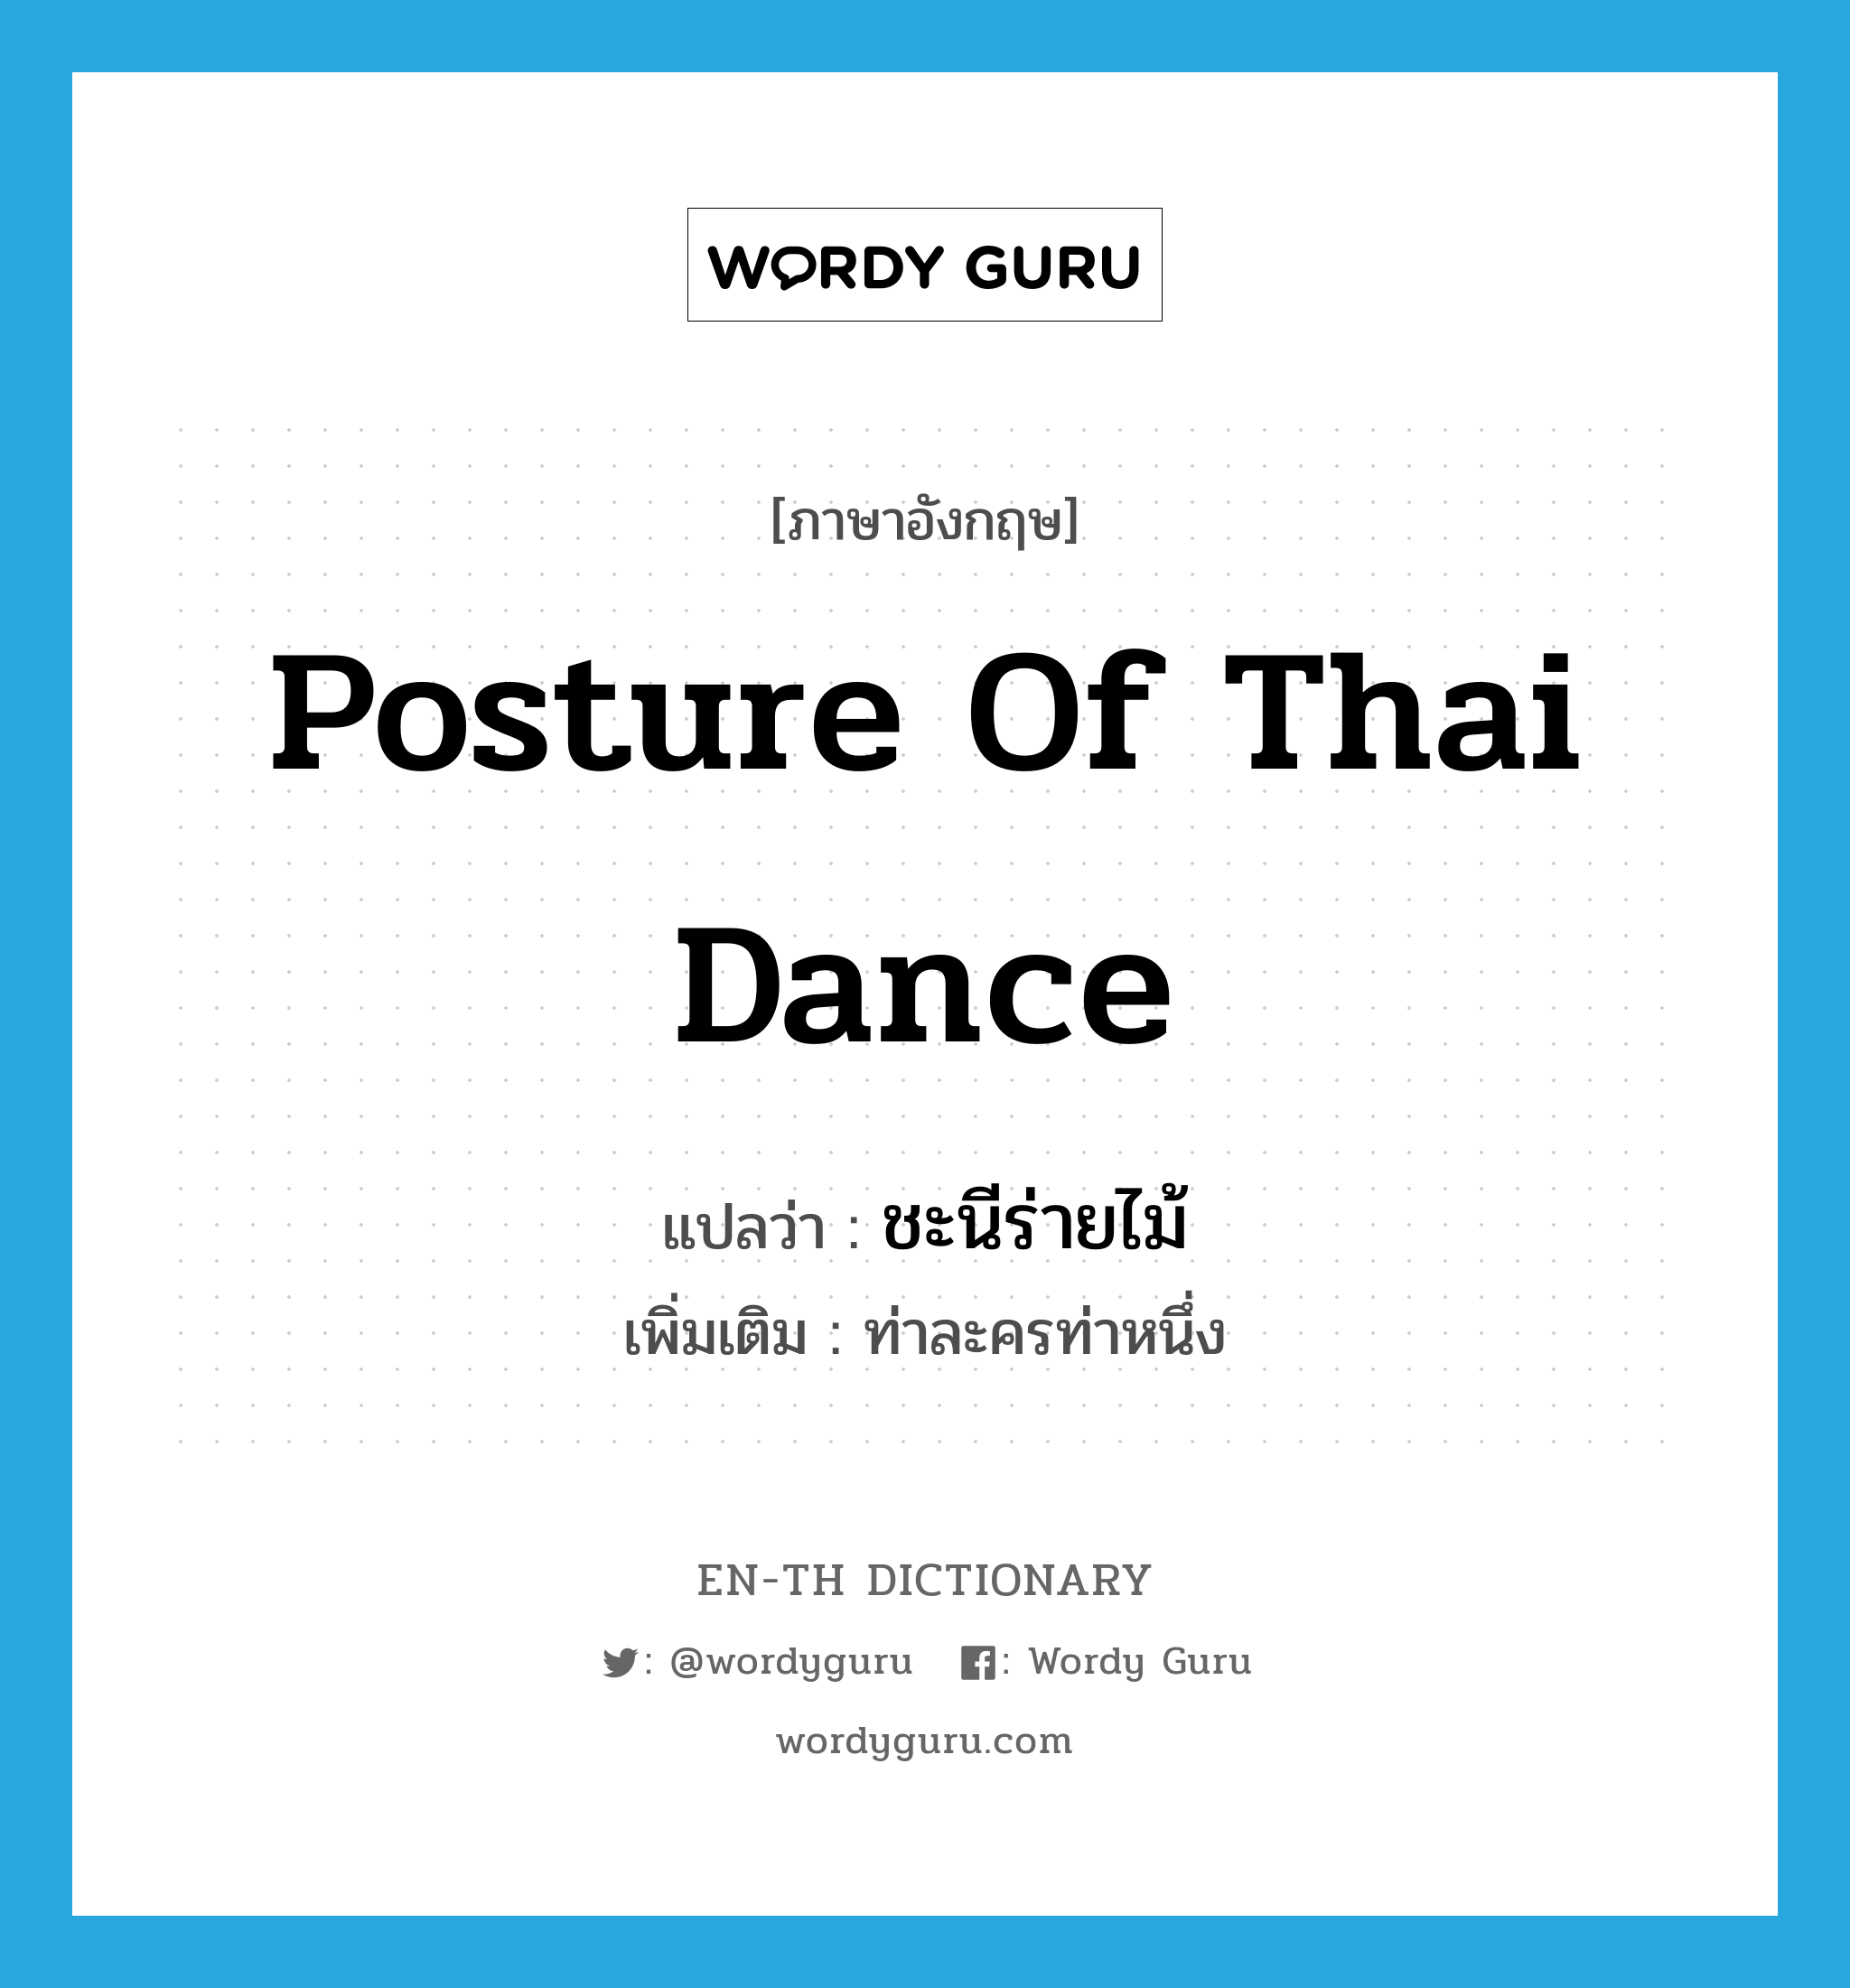 ชะนีร่ายไม้ ภาษาอังกฤษ?, คำศัพท์ภาษาอังกฤษ ชะนีร่ายไม้ แปลว่า posture of Thai dance ประเภท N เพิ่มเติม ท่าละครท่าหนึ่ง หมวด N